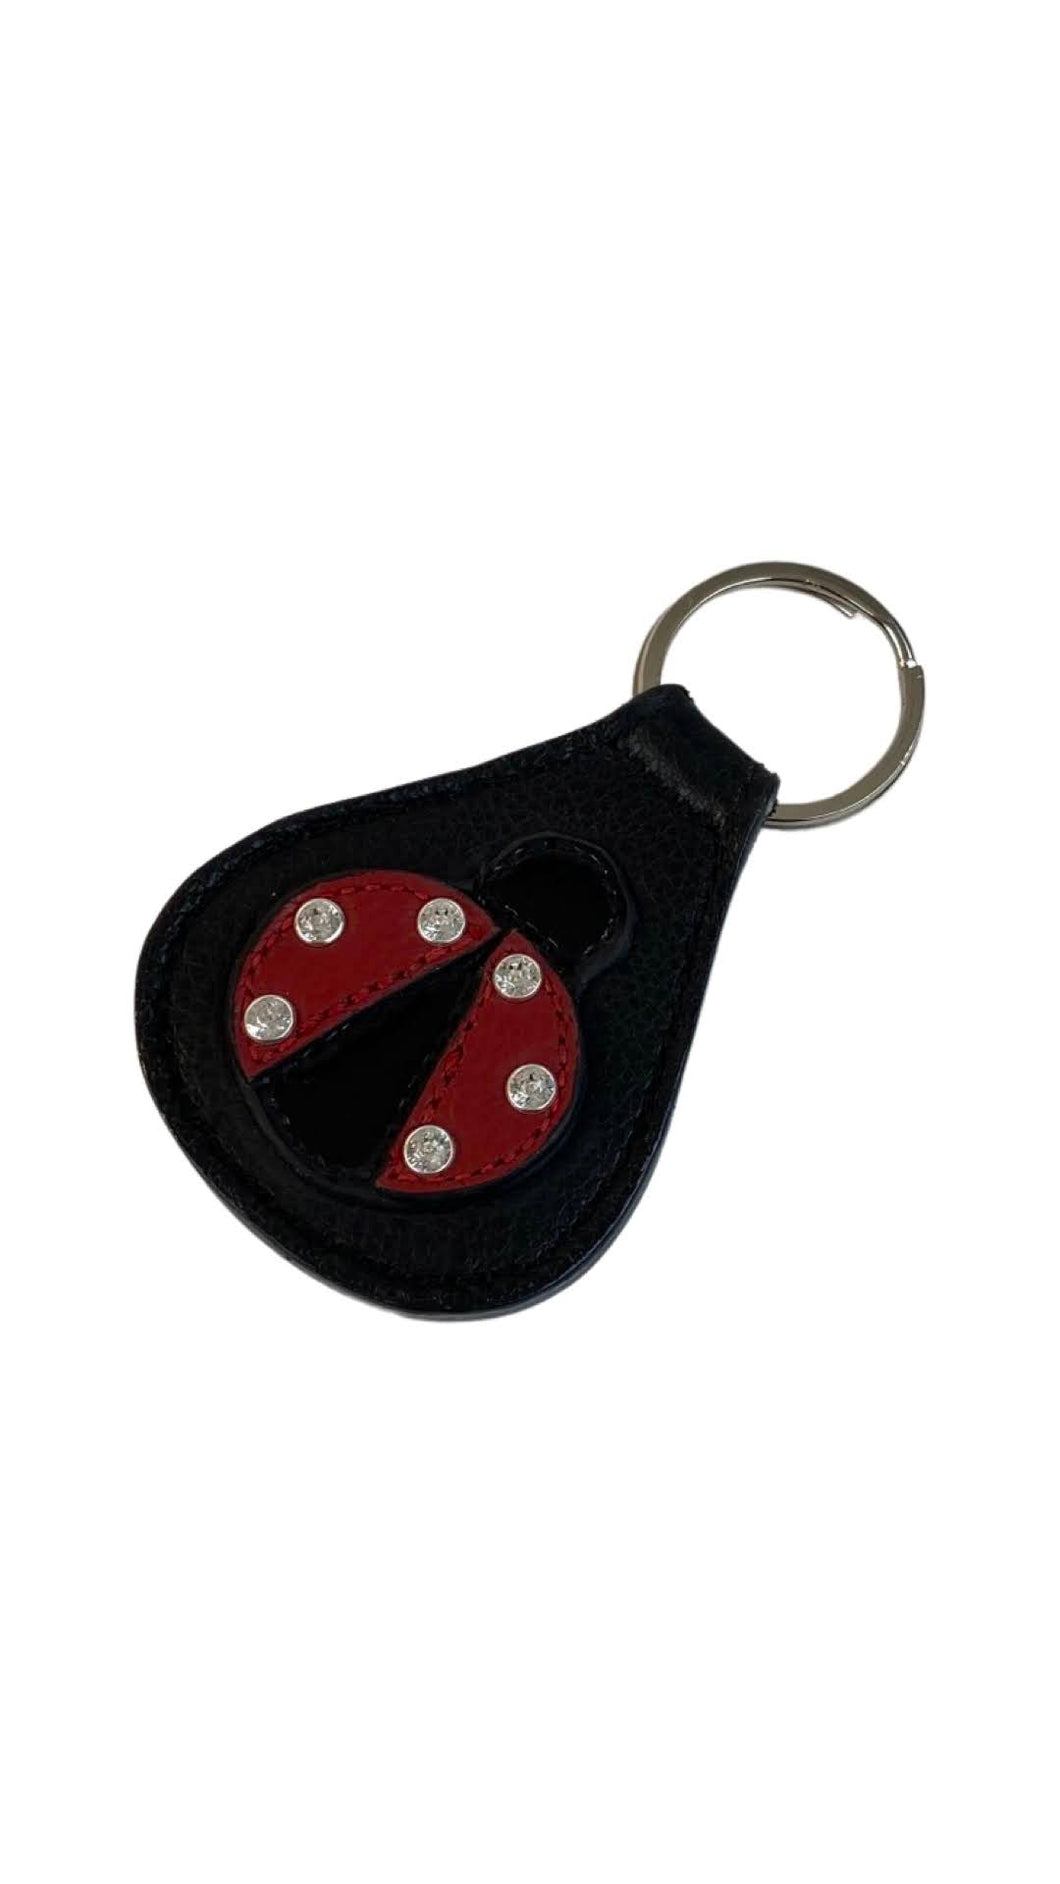 Ladybug Leather Key FOB